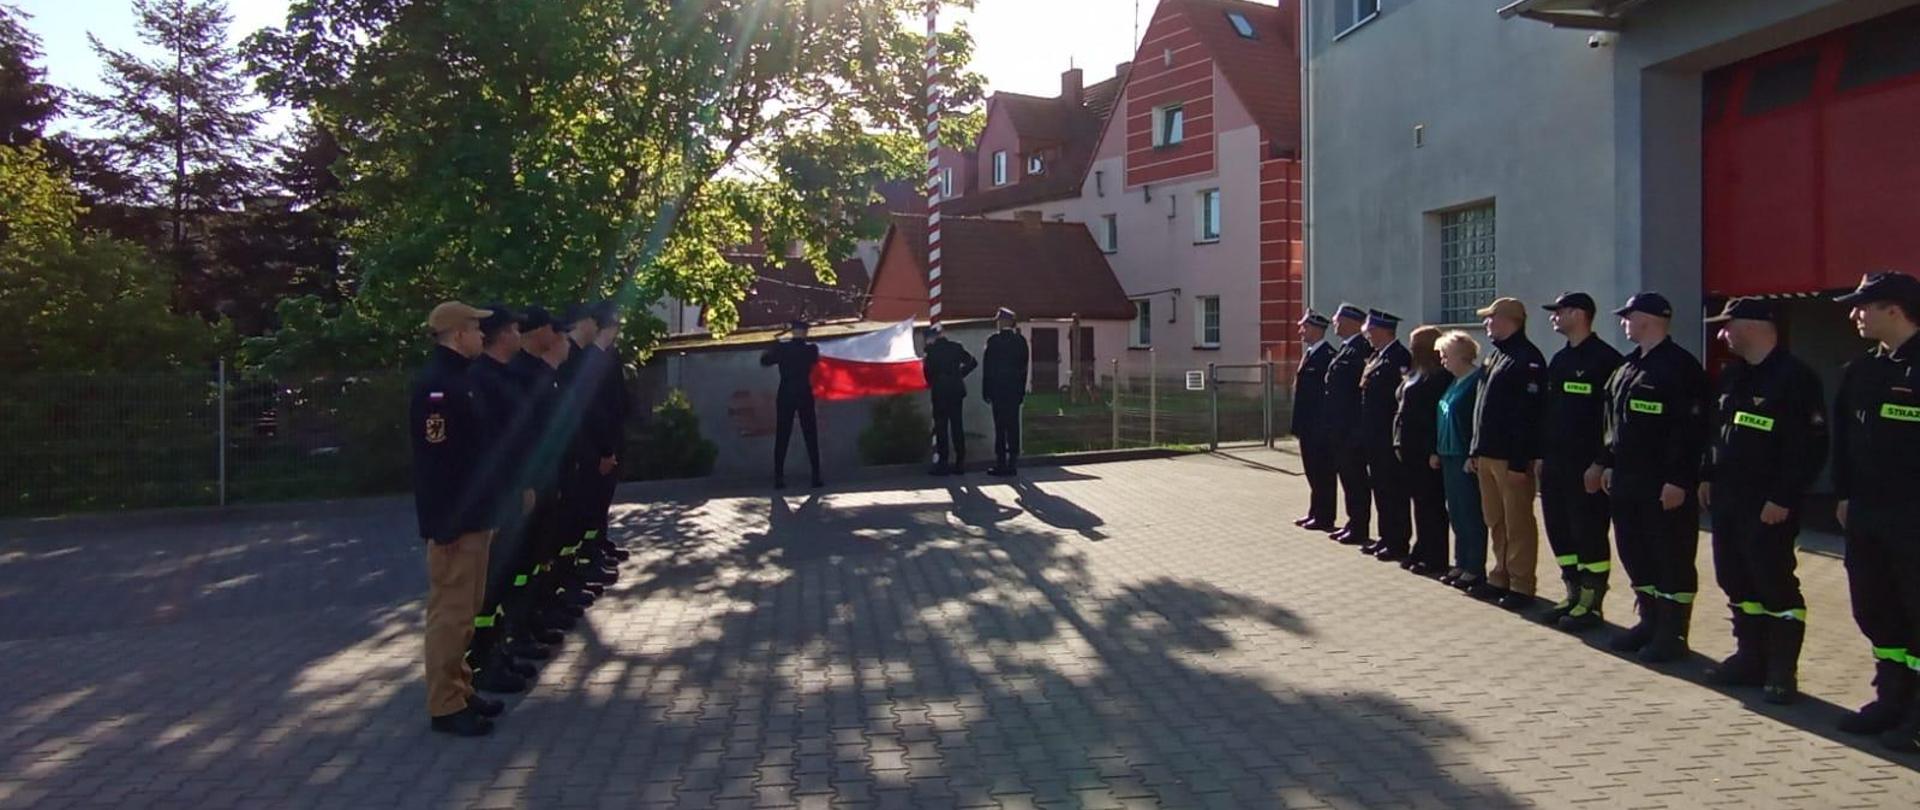 Strażacy oraz pracownicy służby cywilnej Komendy Powiatowej Państwowej Straży Pożarnej w Lęborku podczas uroczystego podniesienia flagi państwowej na maszt. Wszyscy stoją na baczność na placu. Rozłożona flaga trzymana przez strażaka pocztu flagowego w trakcie uroczystego podniesienia na maszt.